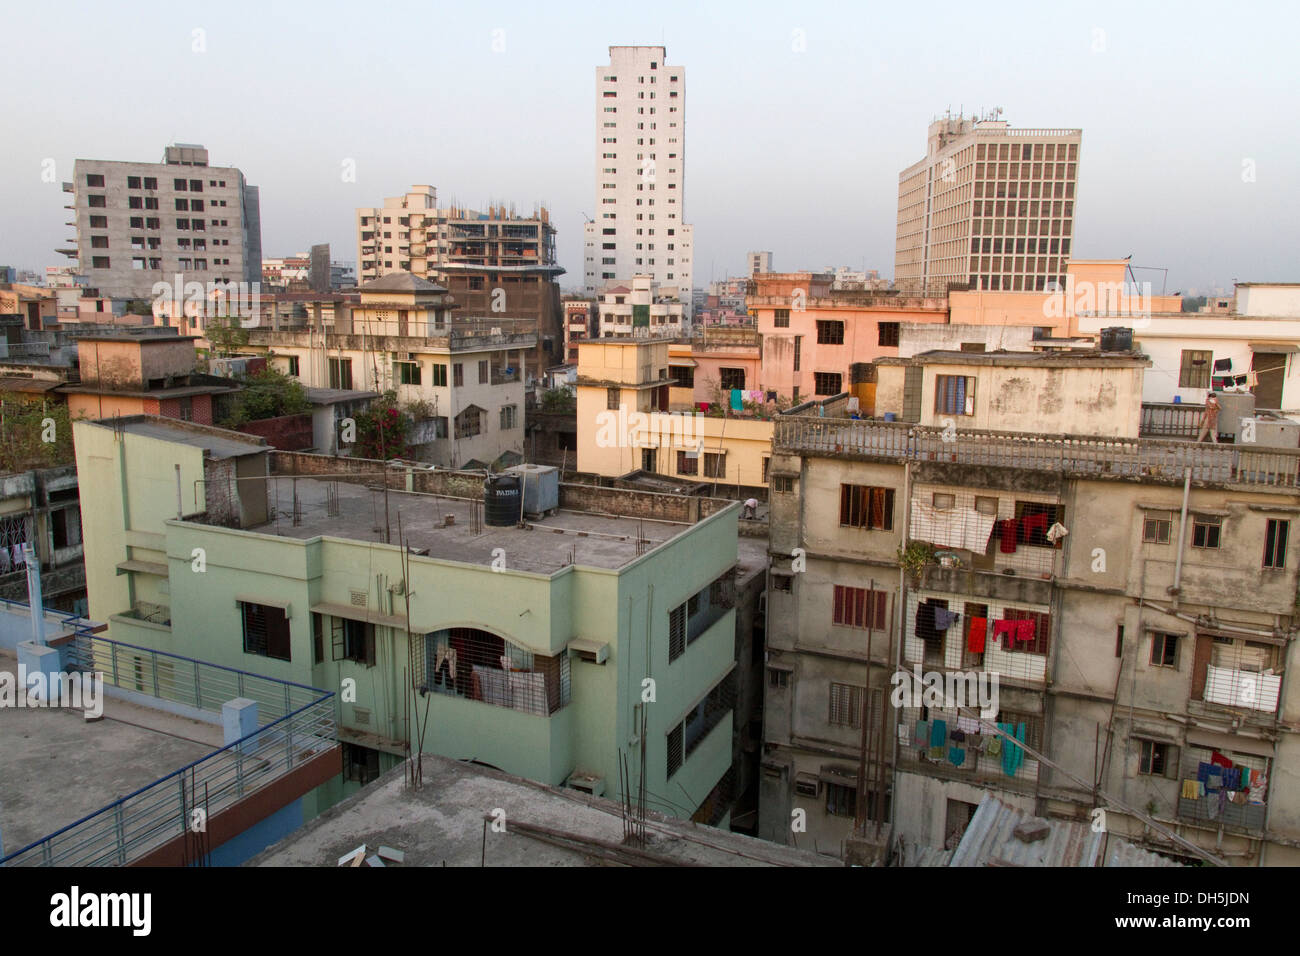 Vue depuis une terrasse sur le toit sur le Syamoli, district de Dhaka, au Bangladesh, en Asie du Sud, Asie Banque D'Images